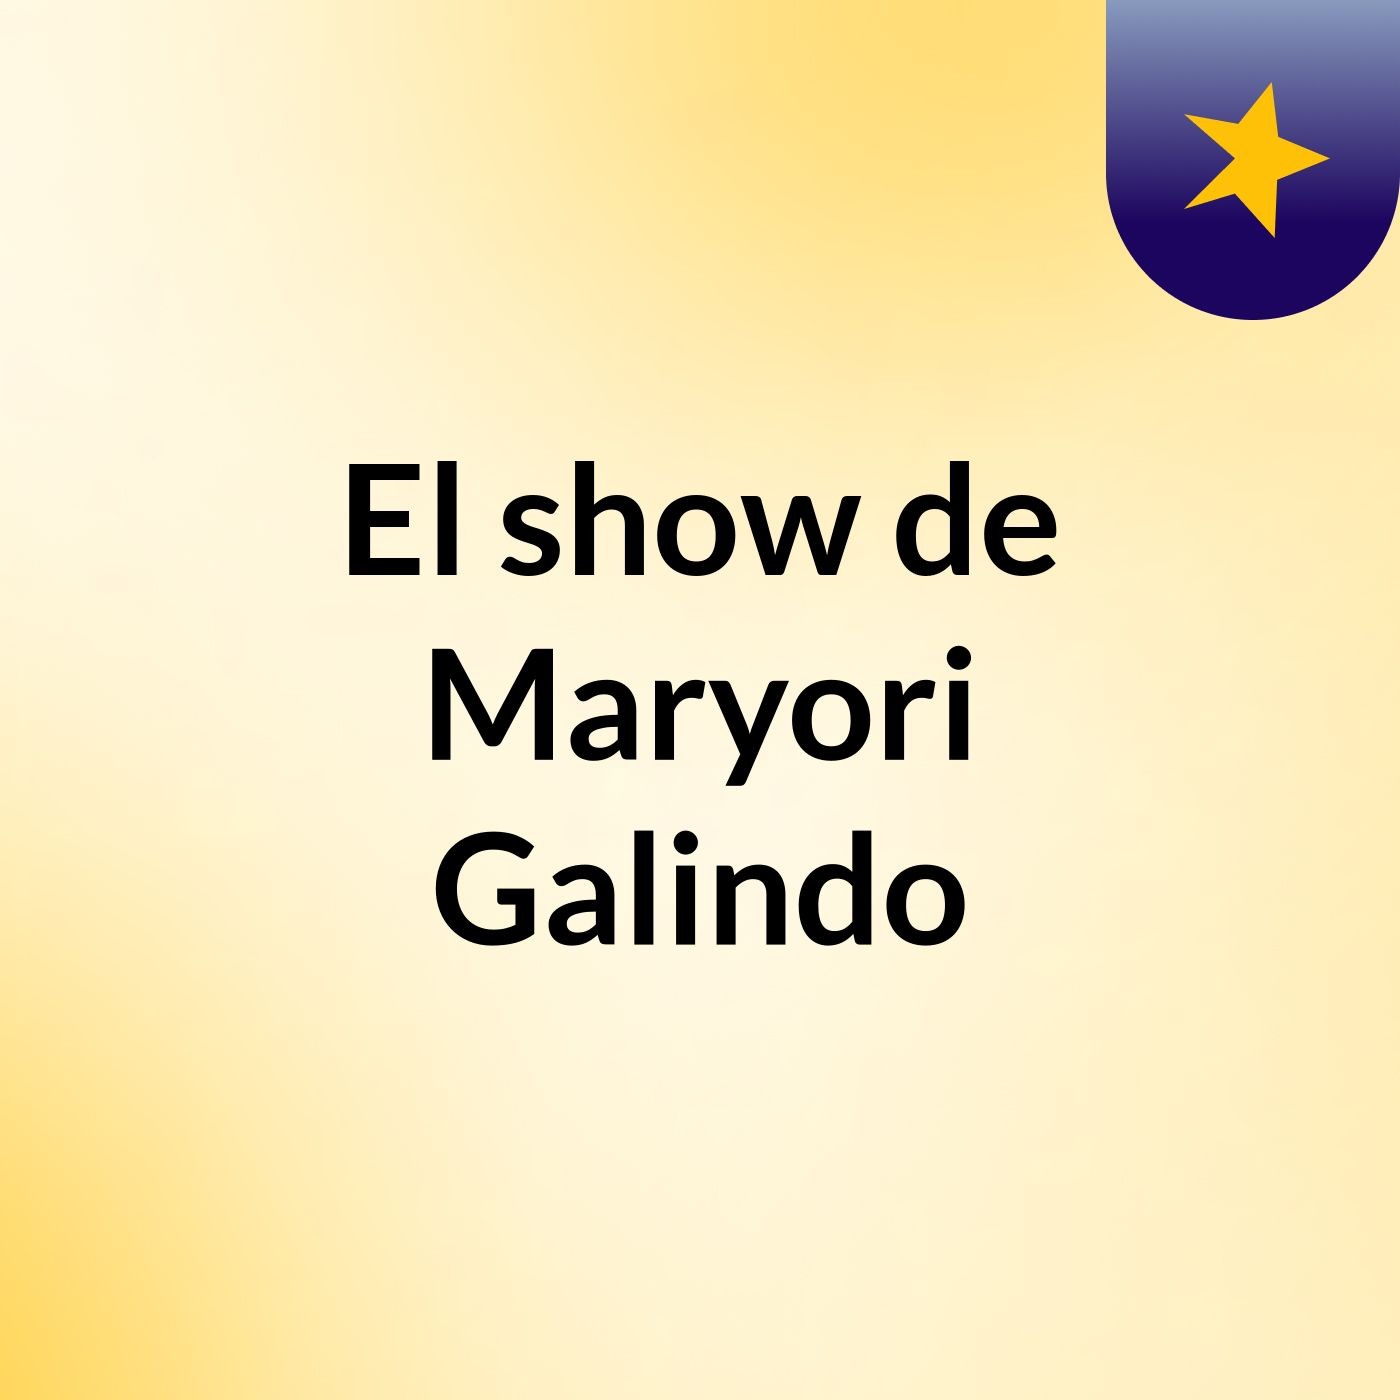 El show de Maryori Galindo